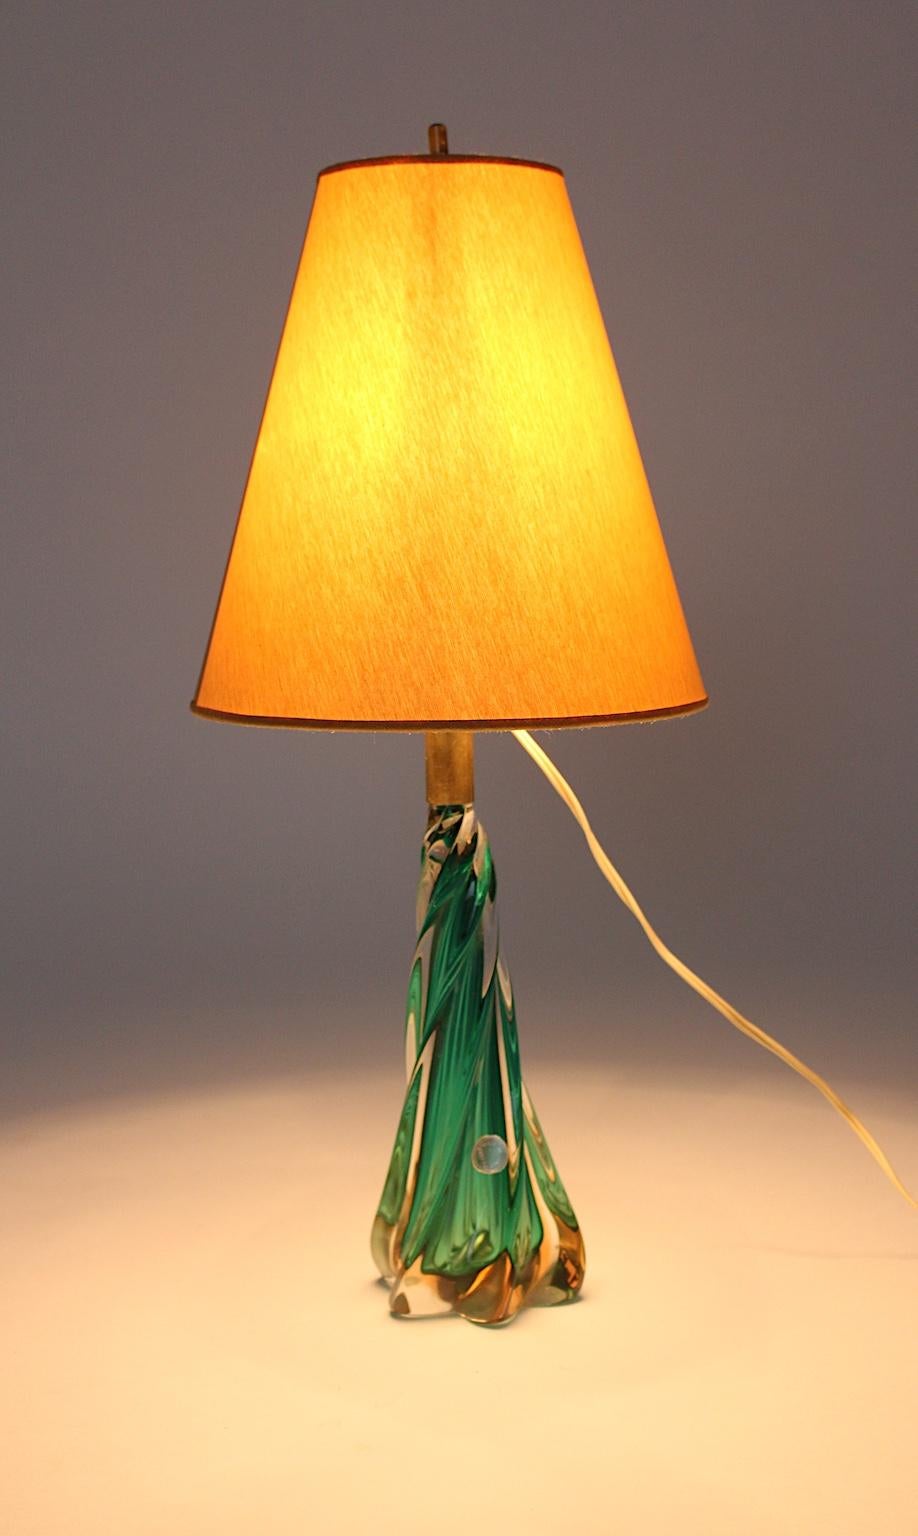 Moderne Tischlampe aus Glas aus der Jahrhundertmitte, entworfen und hergestellt in Murano, Venedig, Italien, 1950er Jahre.
Der schöne gedrehte grüne Tischsockel wurde aus mundgeblasenem Glas mit goldenen Einsprengseln hergestellt und weist auch